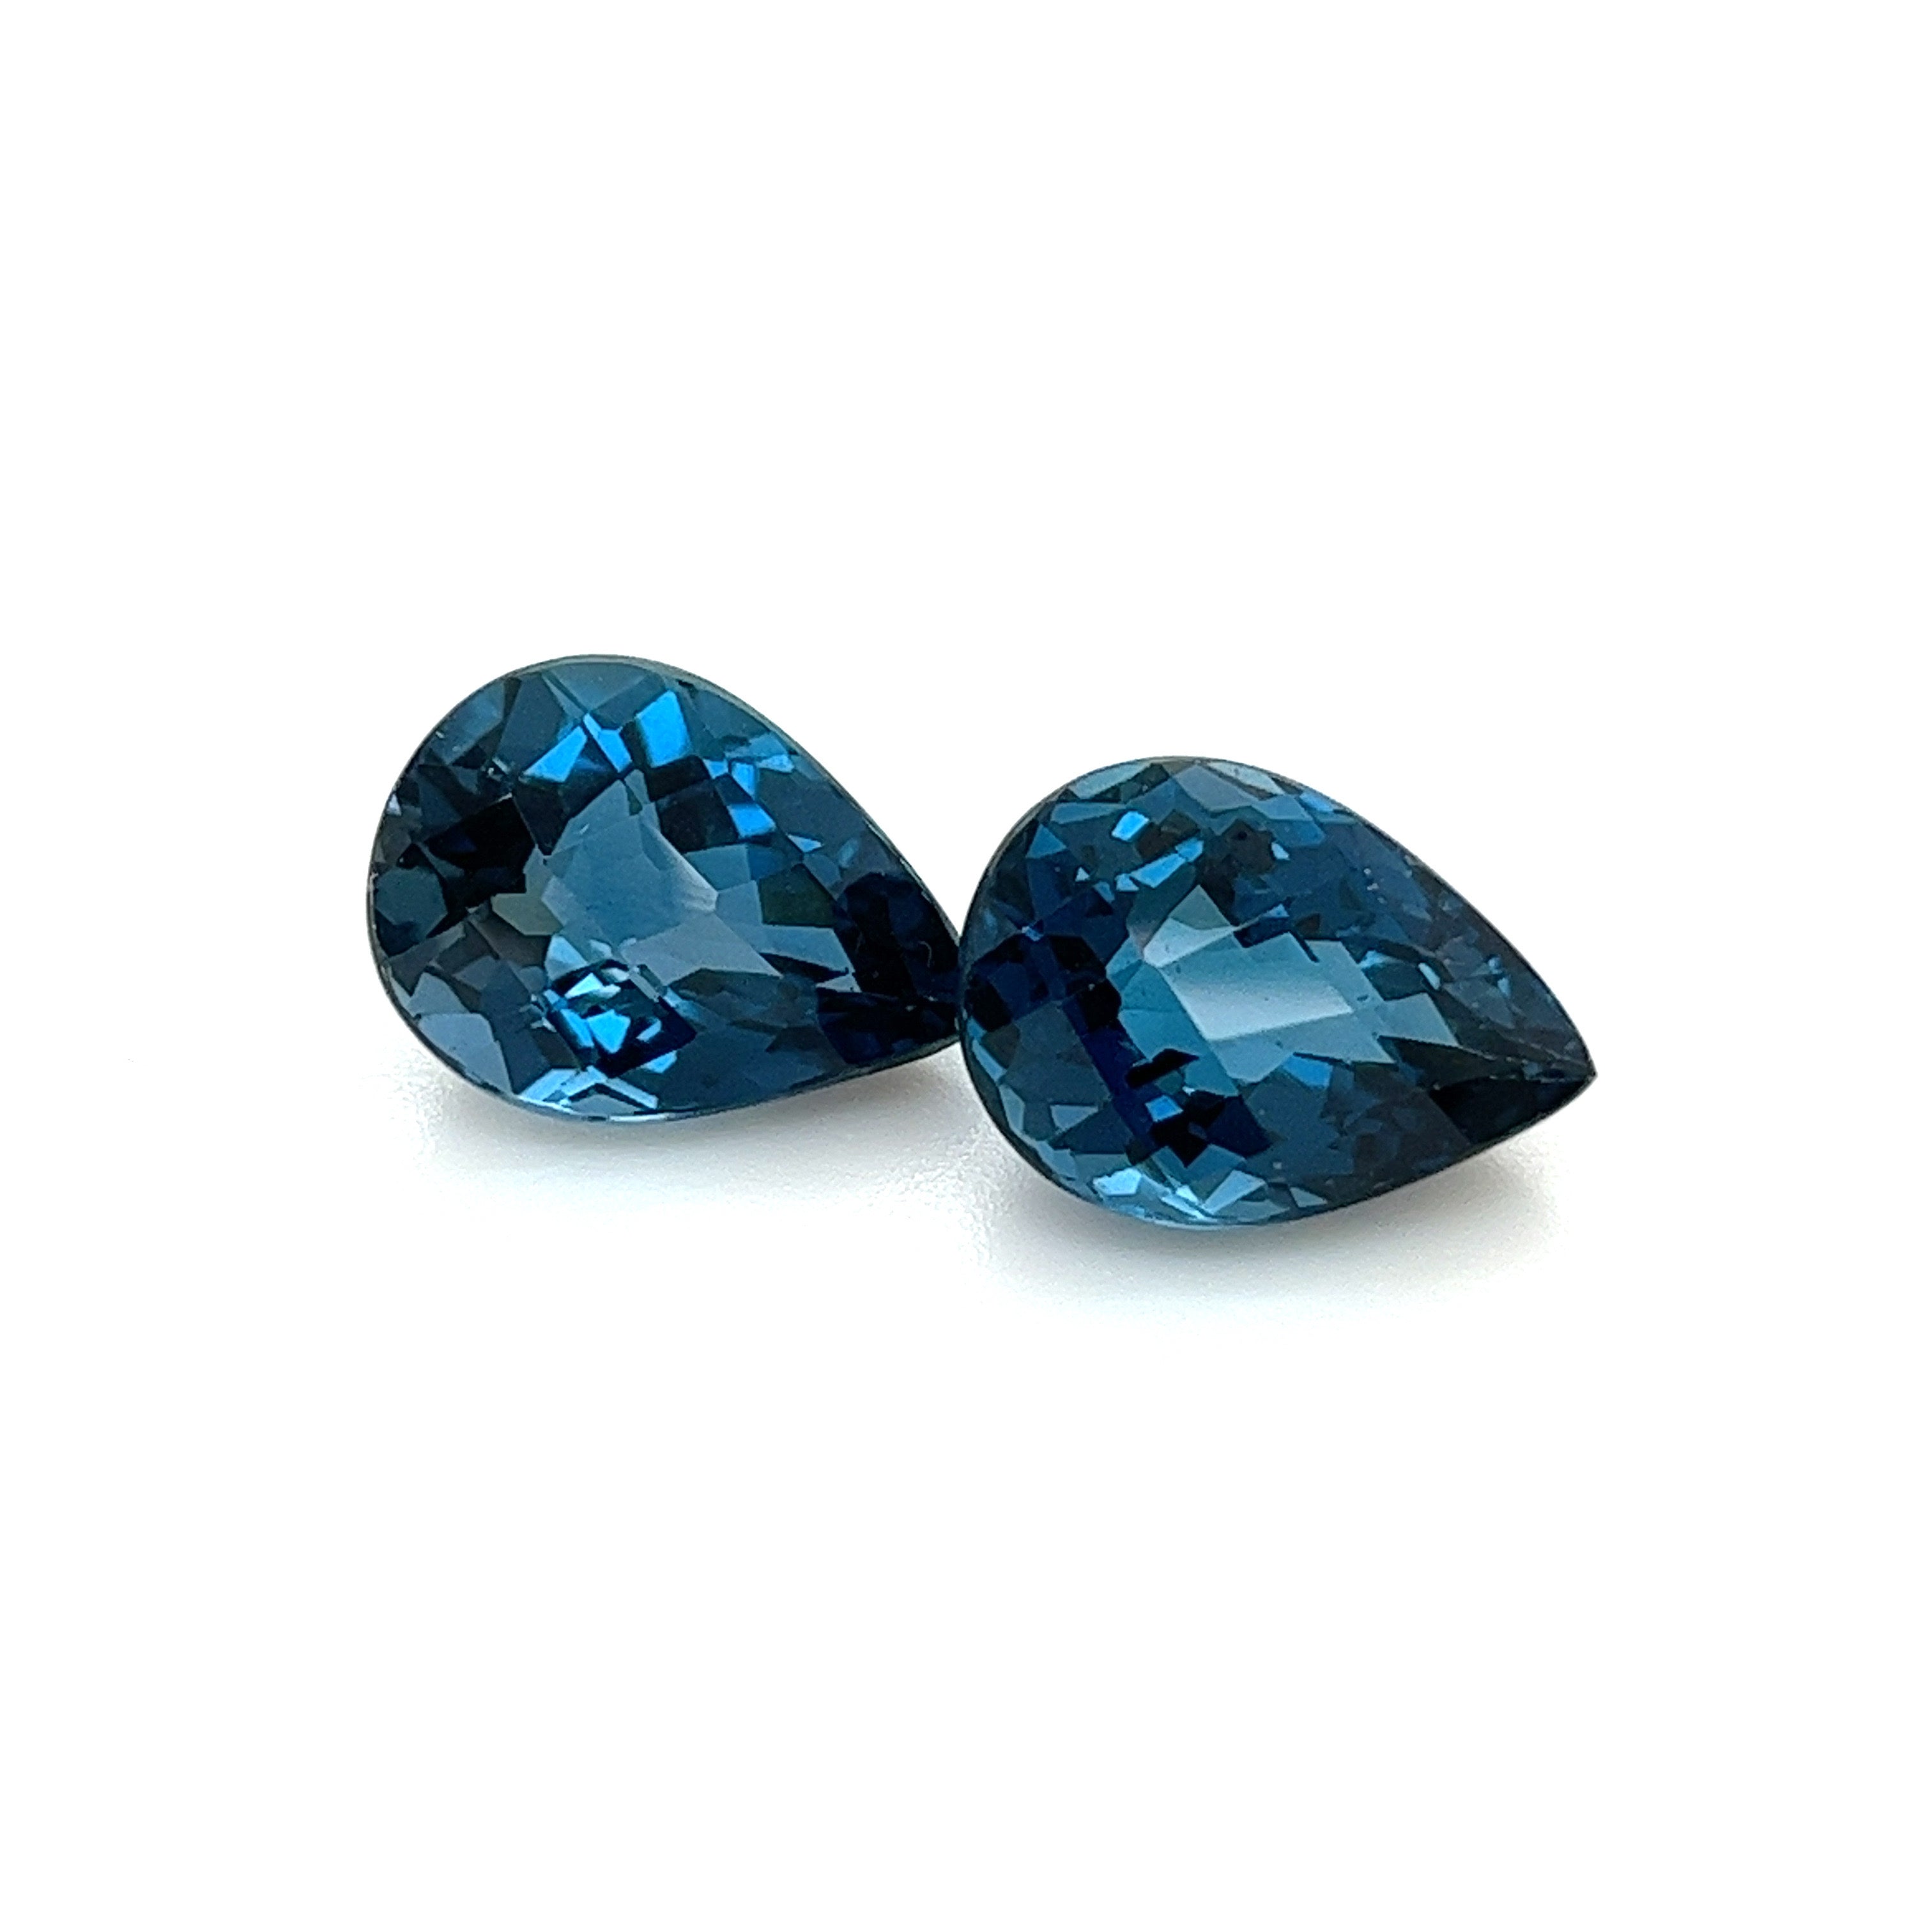 London Blue Topaz Gemstones; Natural Brazil Topaz, 13.870cts - Mark Oliver Gems